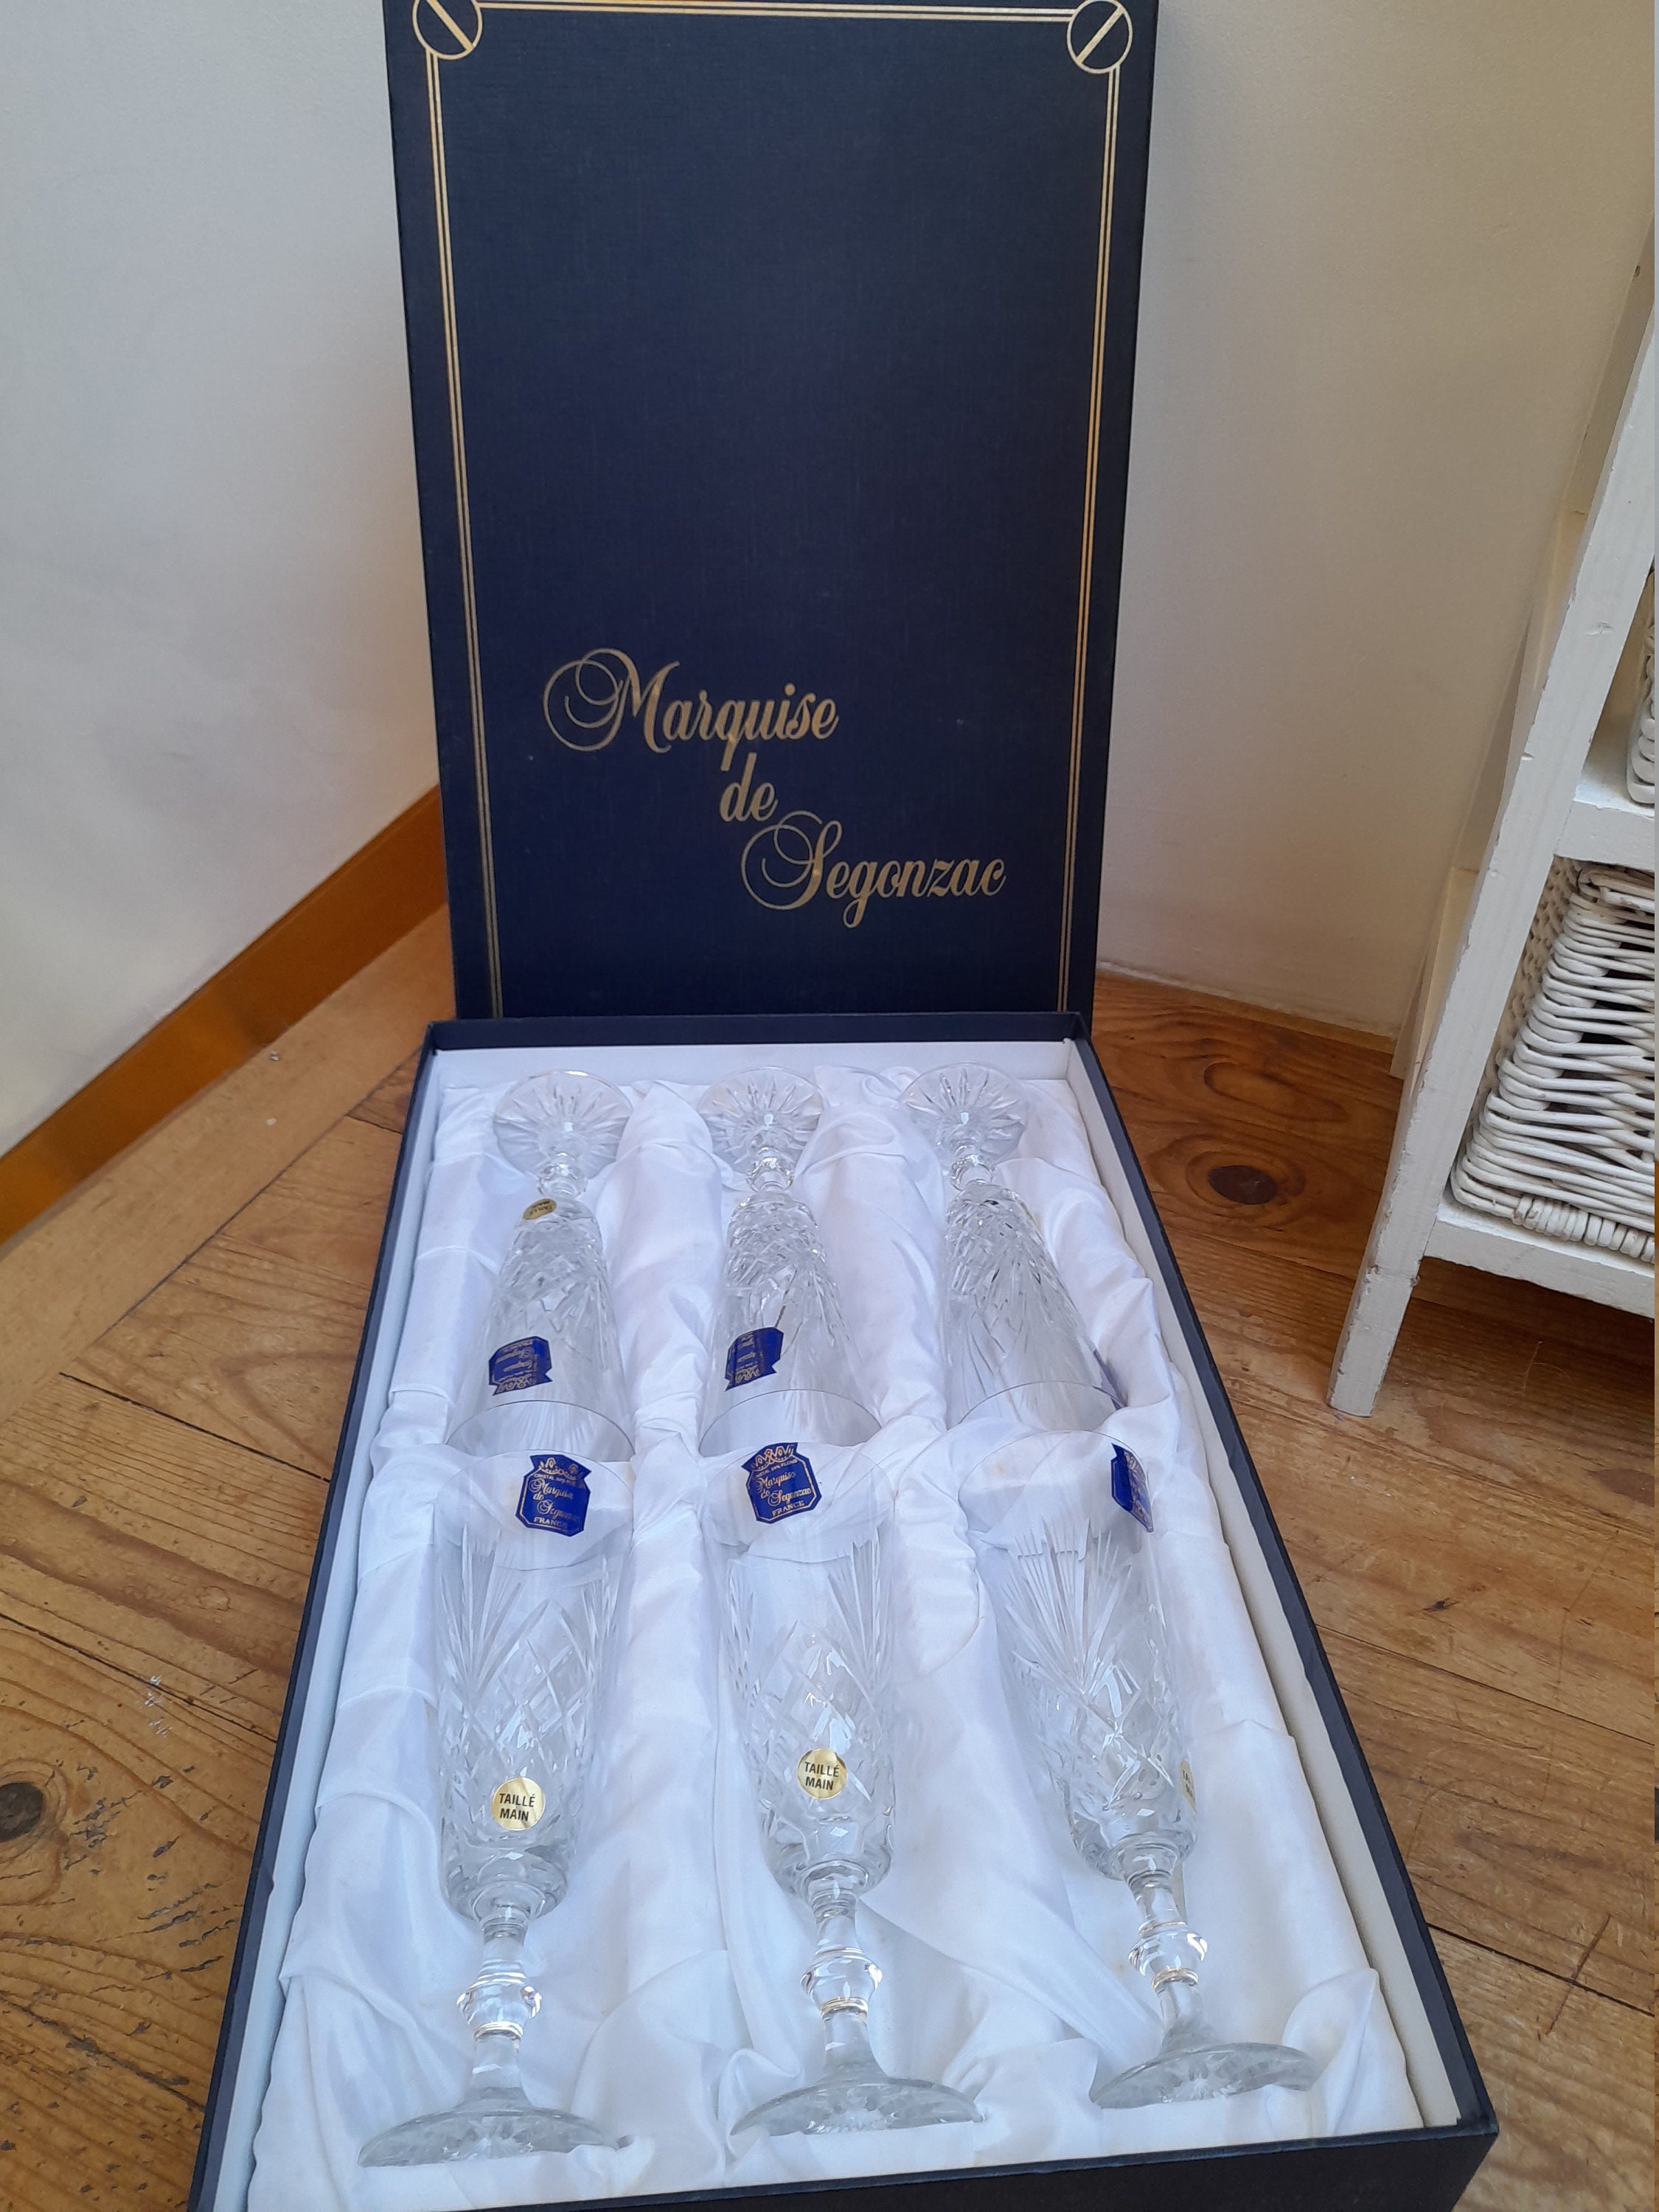 Ensemble Neuf , 6 Flutes A Champagne Cristal Taillé Main + Superbe Sceau Marquise de Segonzac Vintag